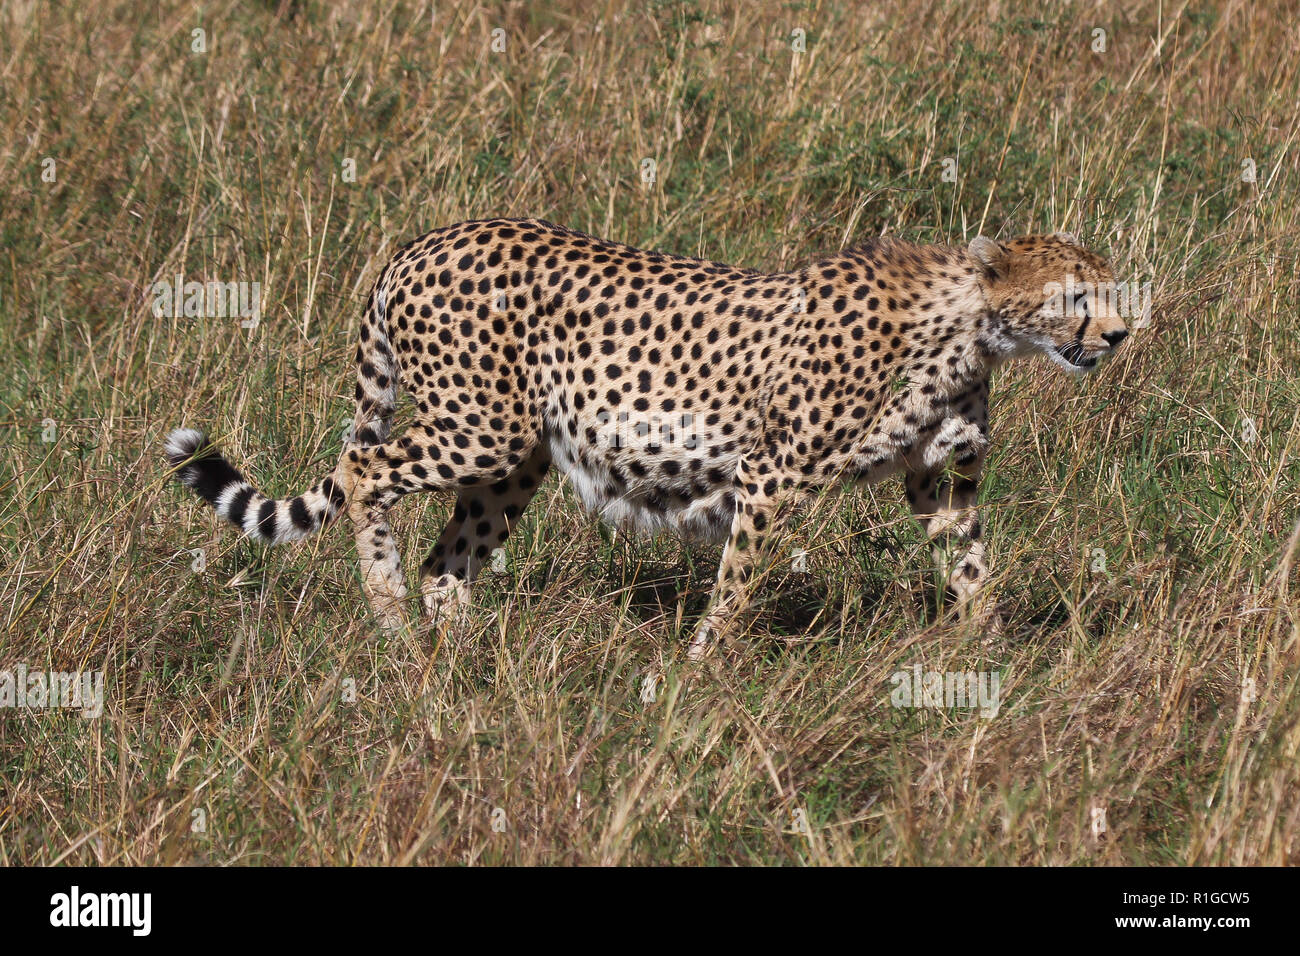 A pregnant cheetah walking through dry grass in Masai Mara national park Stock Photo